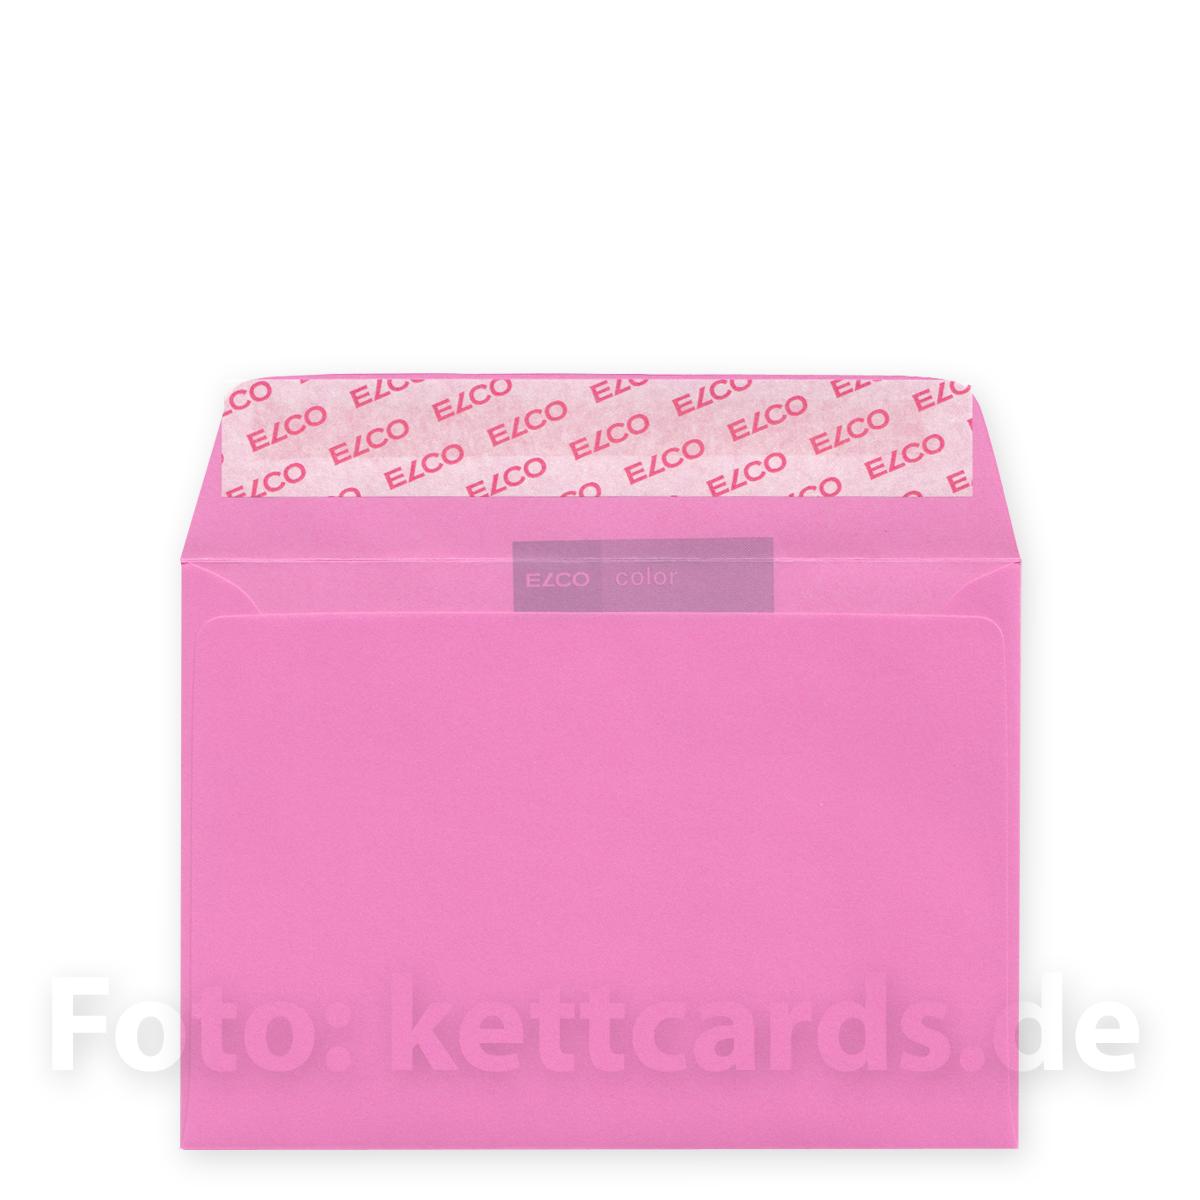 pinker, haftklebender Umschlag, DIN C6